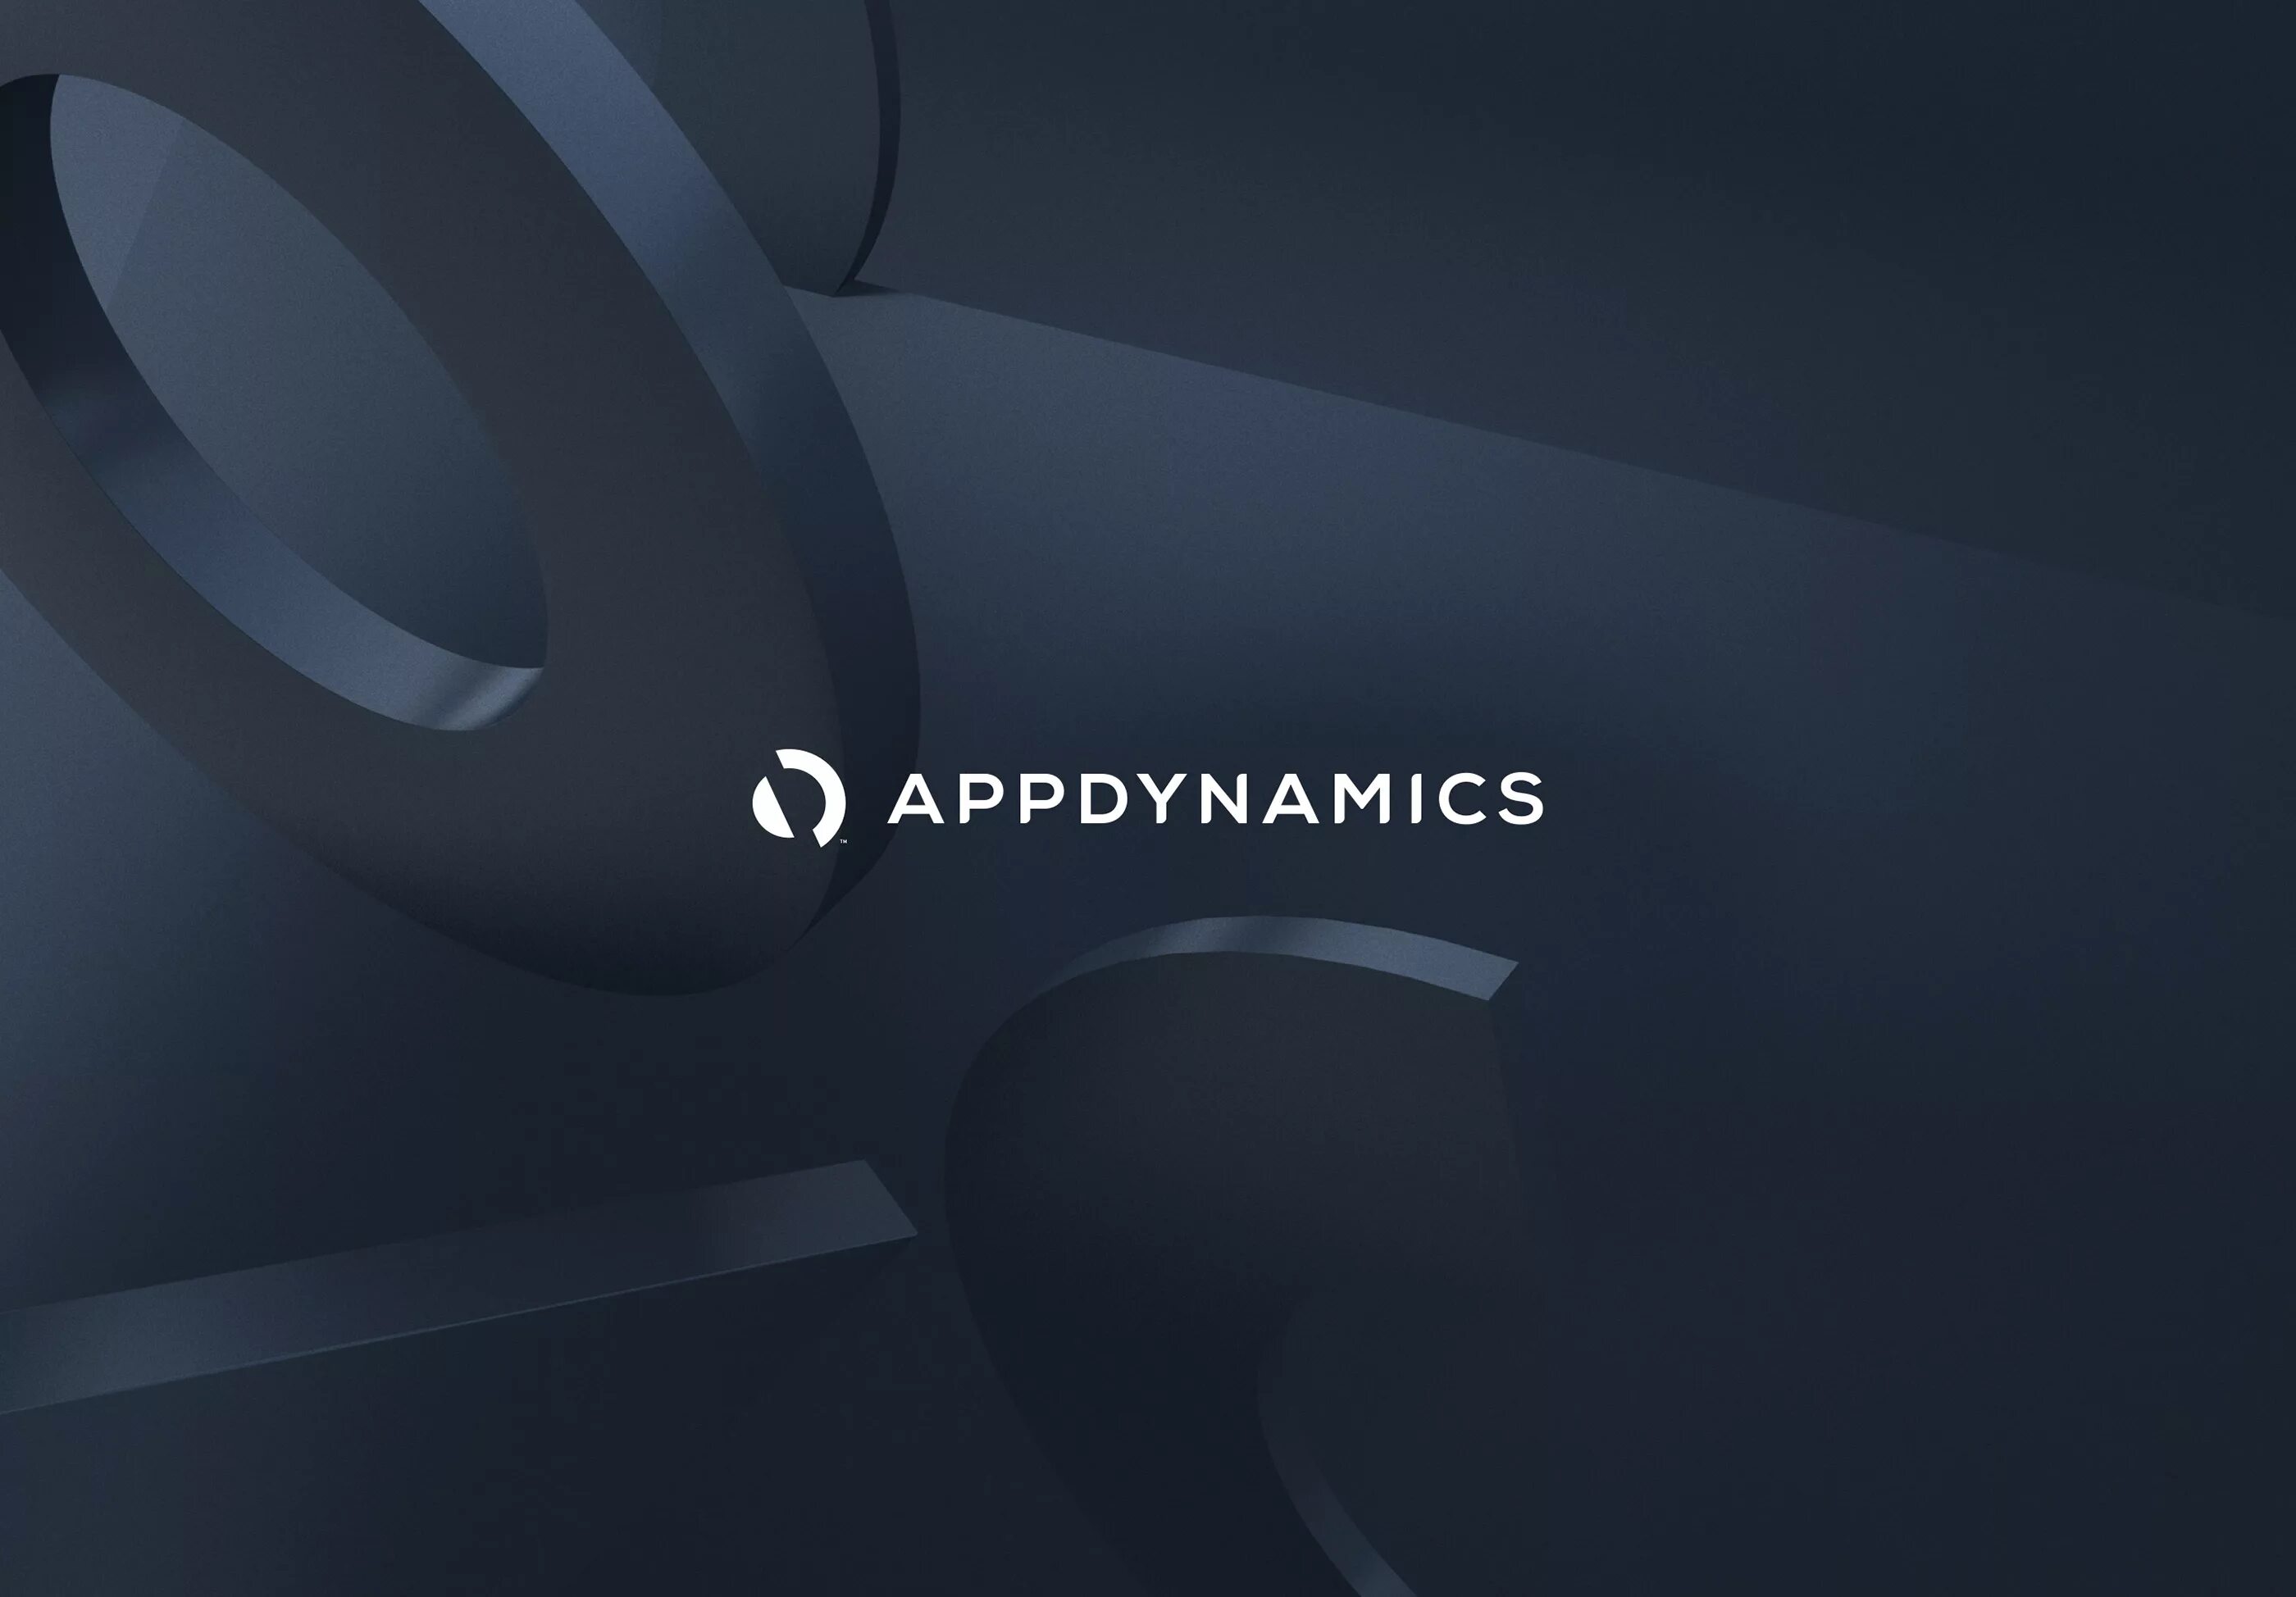 APPDYNAMICS. APPDYNAMICS logo. APPDYNAMICS ads.